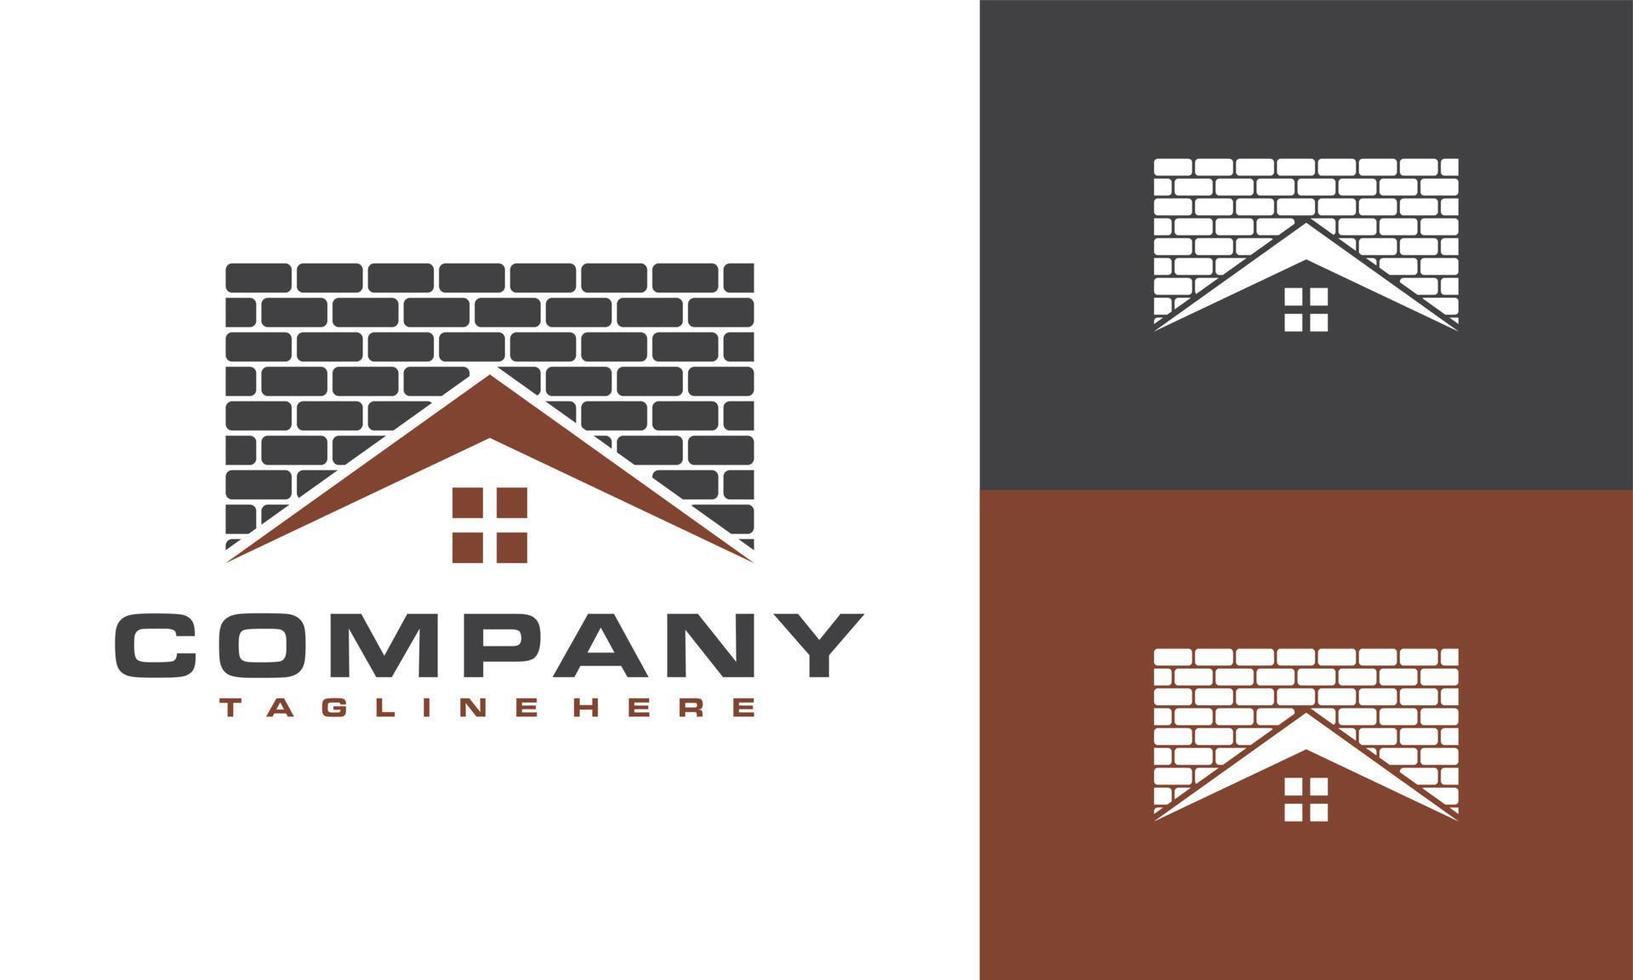 brique maison logo vecteur